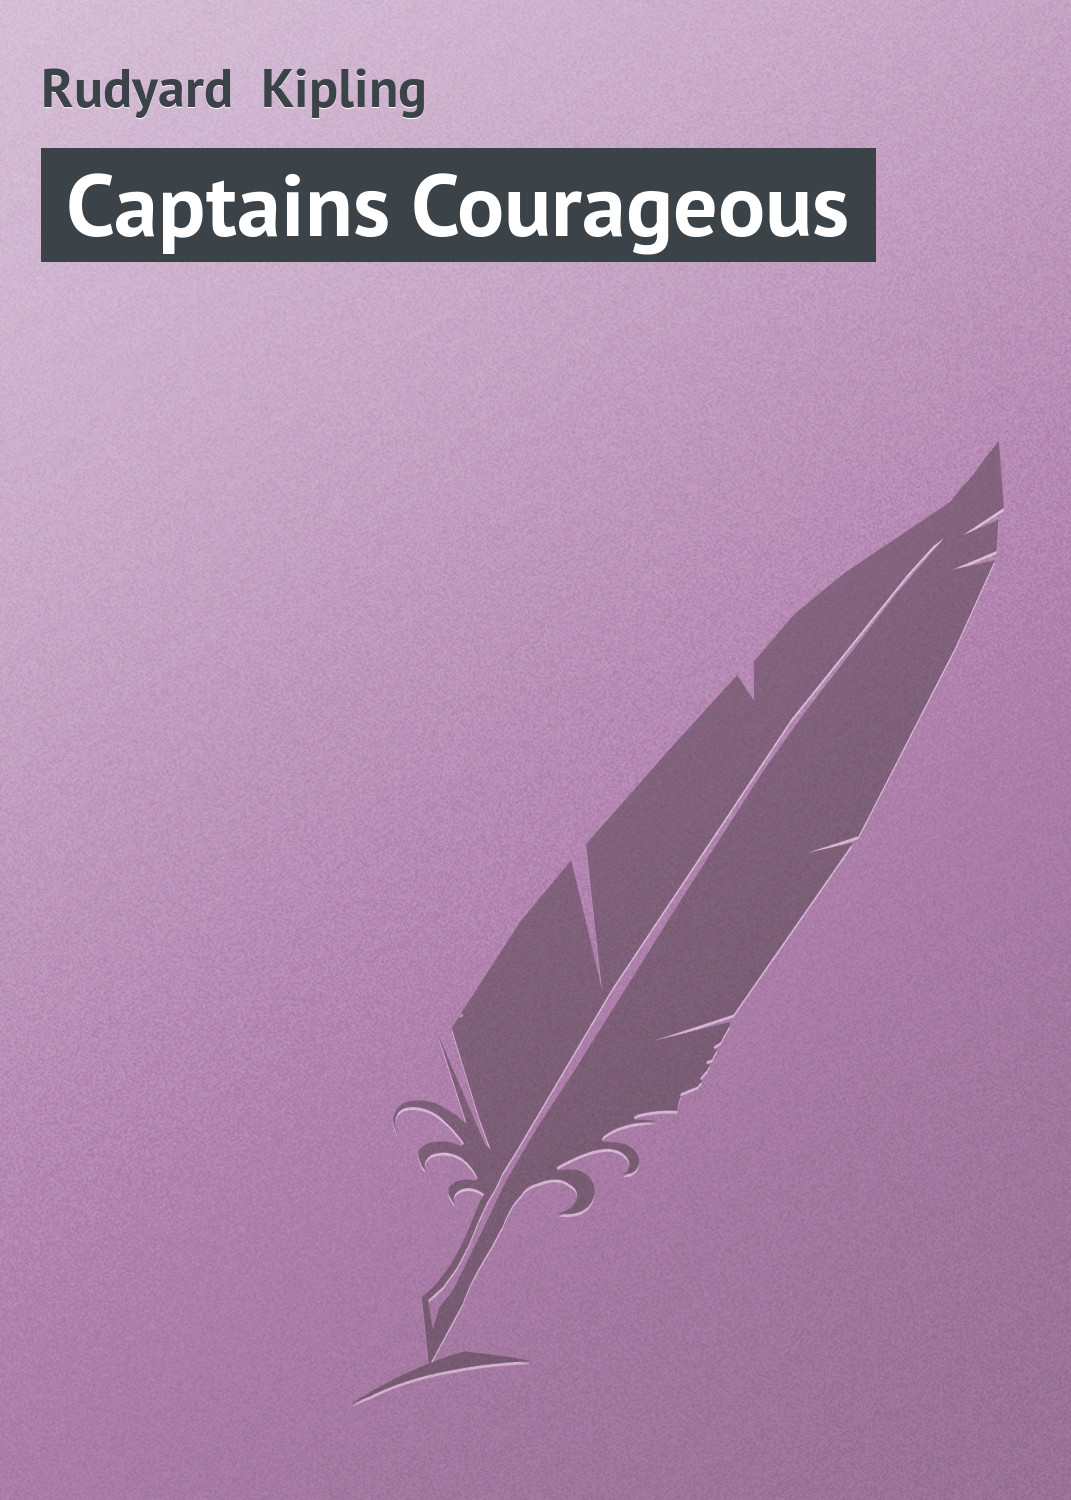 Книга Captains Courageous из серии , созданная Rudyard Kipling, может относится к жанру Зарубежная старинная литература, Зарубежная классика. Стоимость электронной книги Captains Courageous с идентификатором 21103398 составляет 5.99 руб.